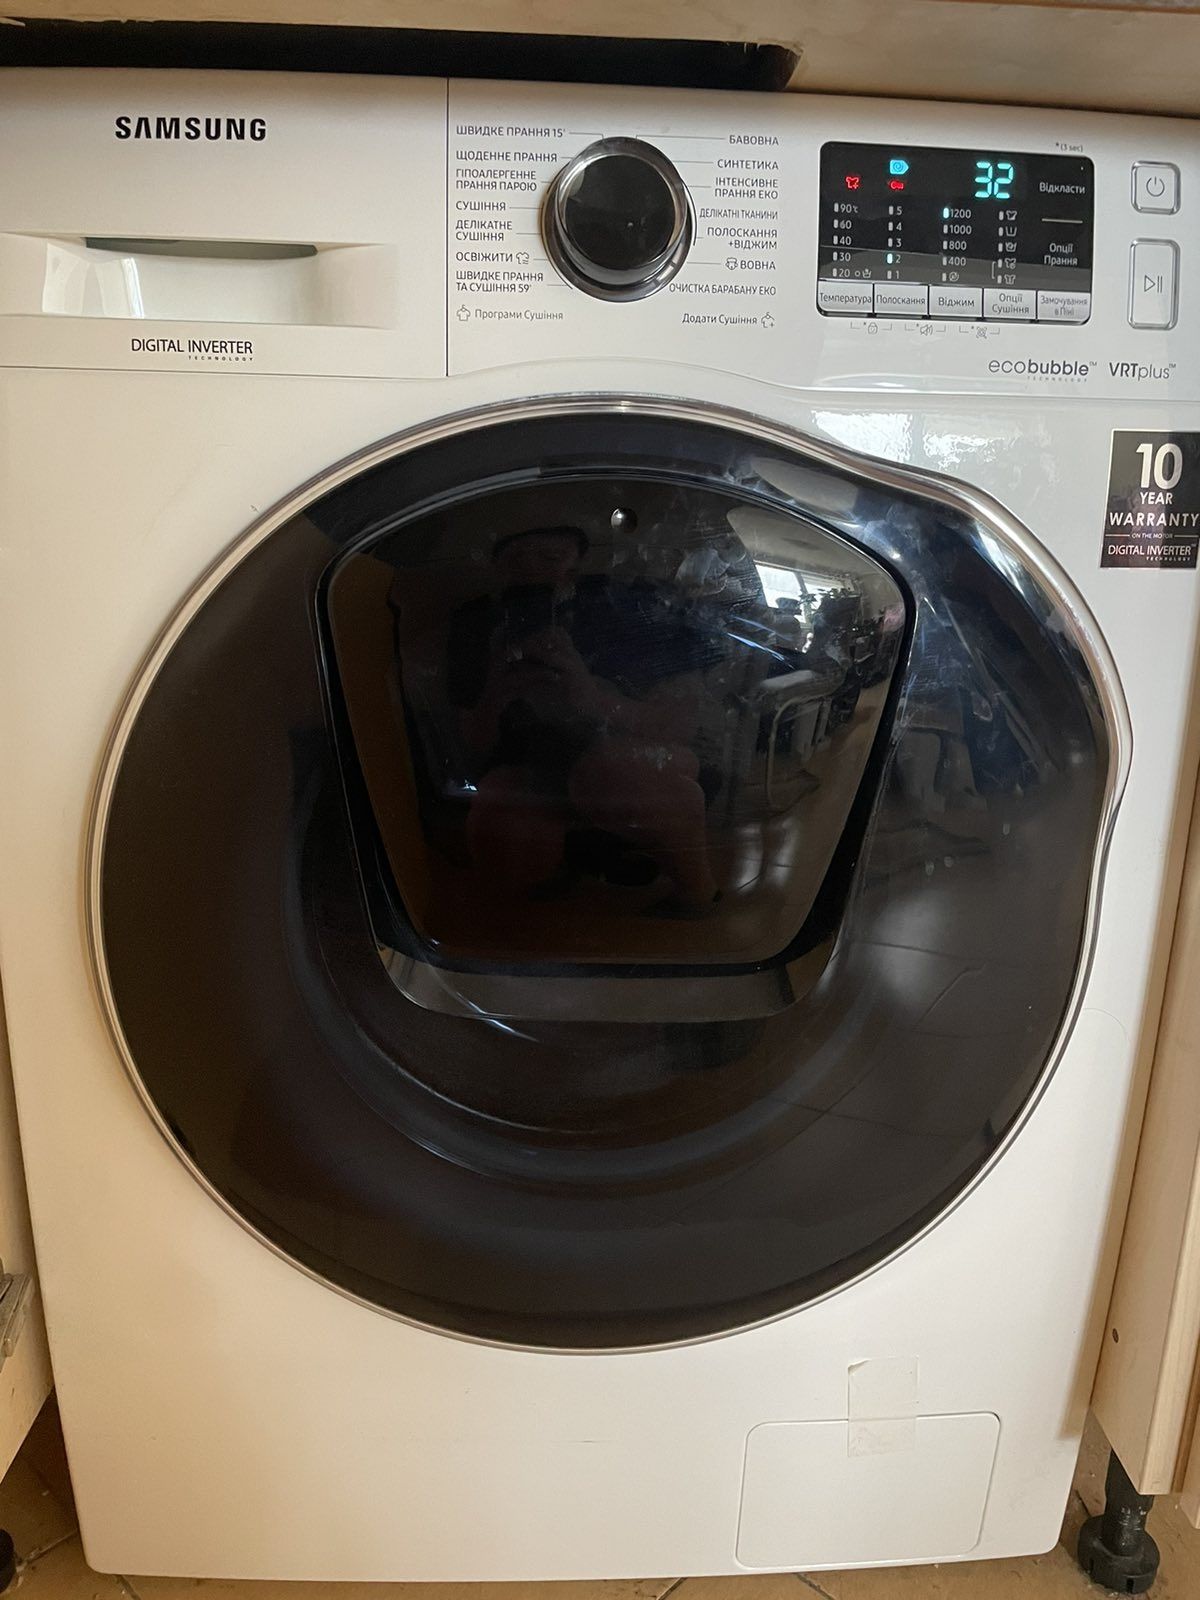 Ремонт пральних машин у вас вдома зручний для вас час